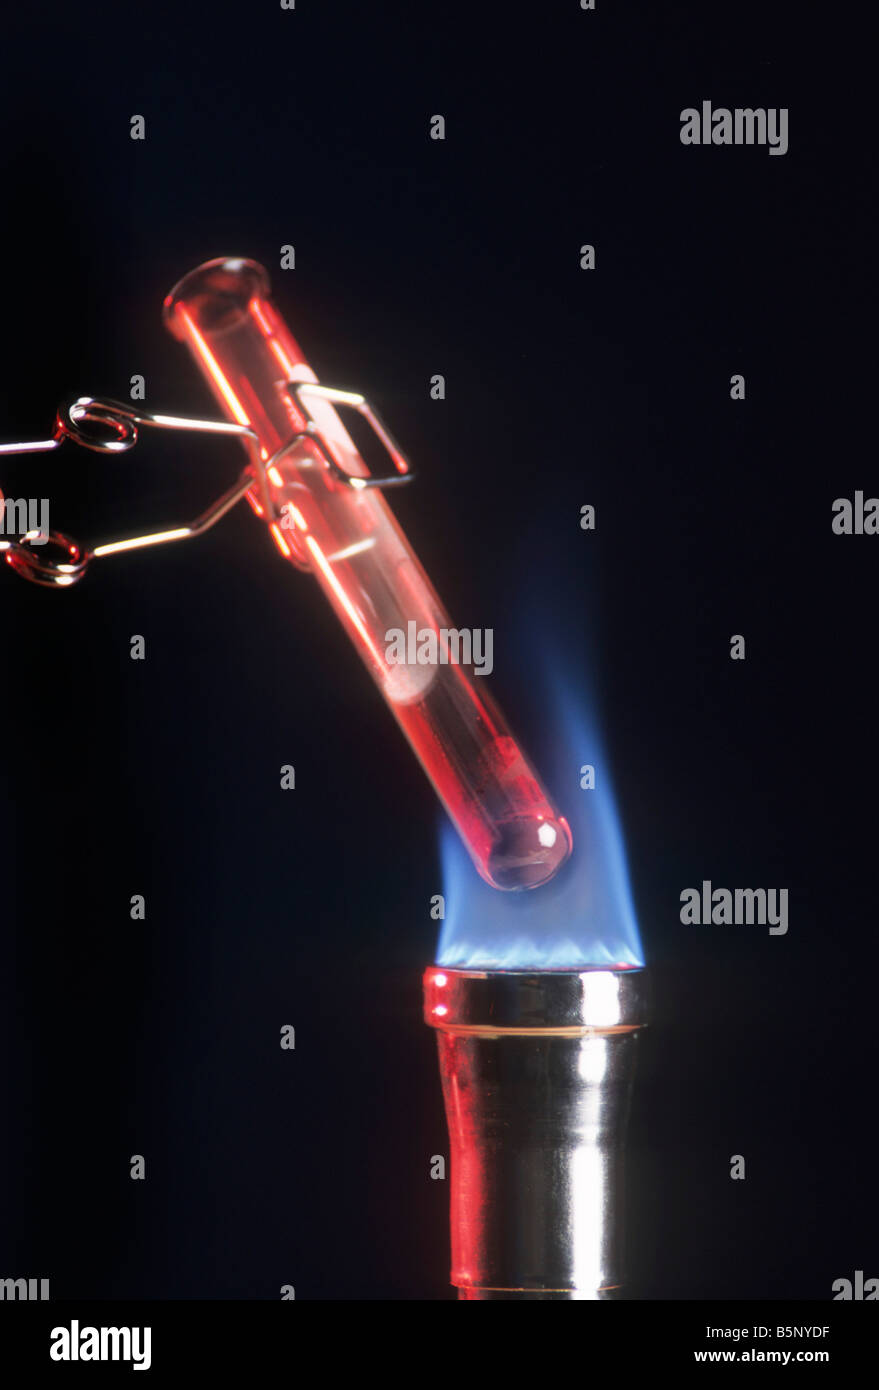 Quecksilberoxid-Oxid wird in flüssigem Quecksilber im Reagenzglas in Flamme von Bunsenbrenner Chemie Experiment gehalten geschmolzen. Stockfoto